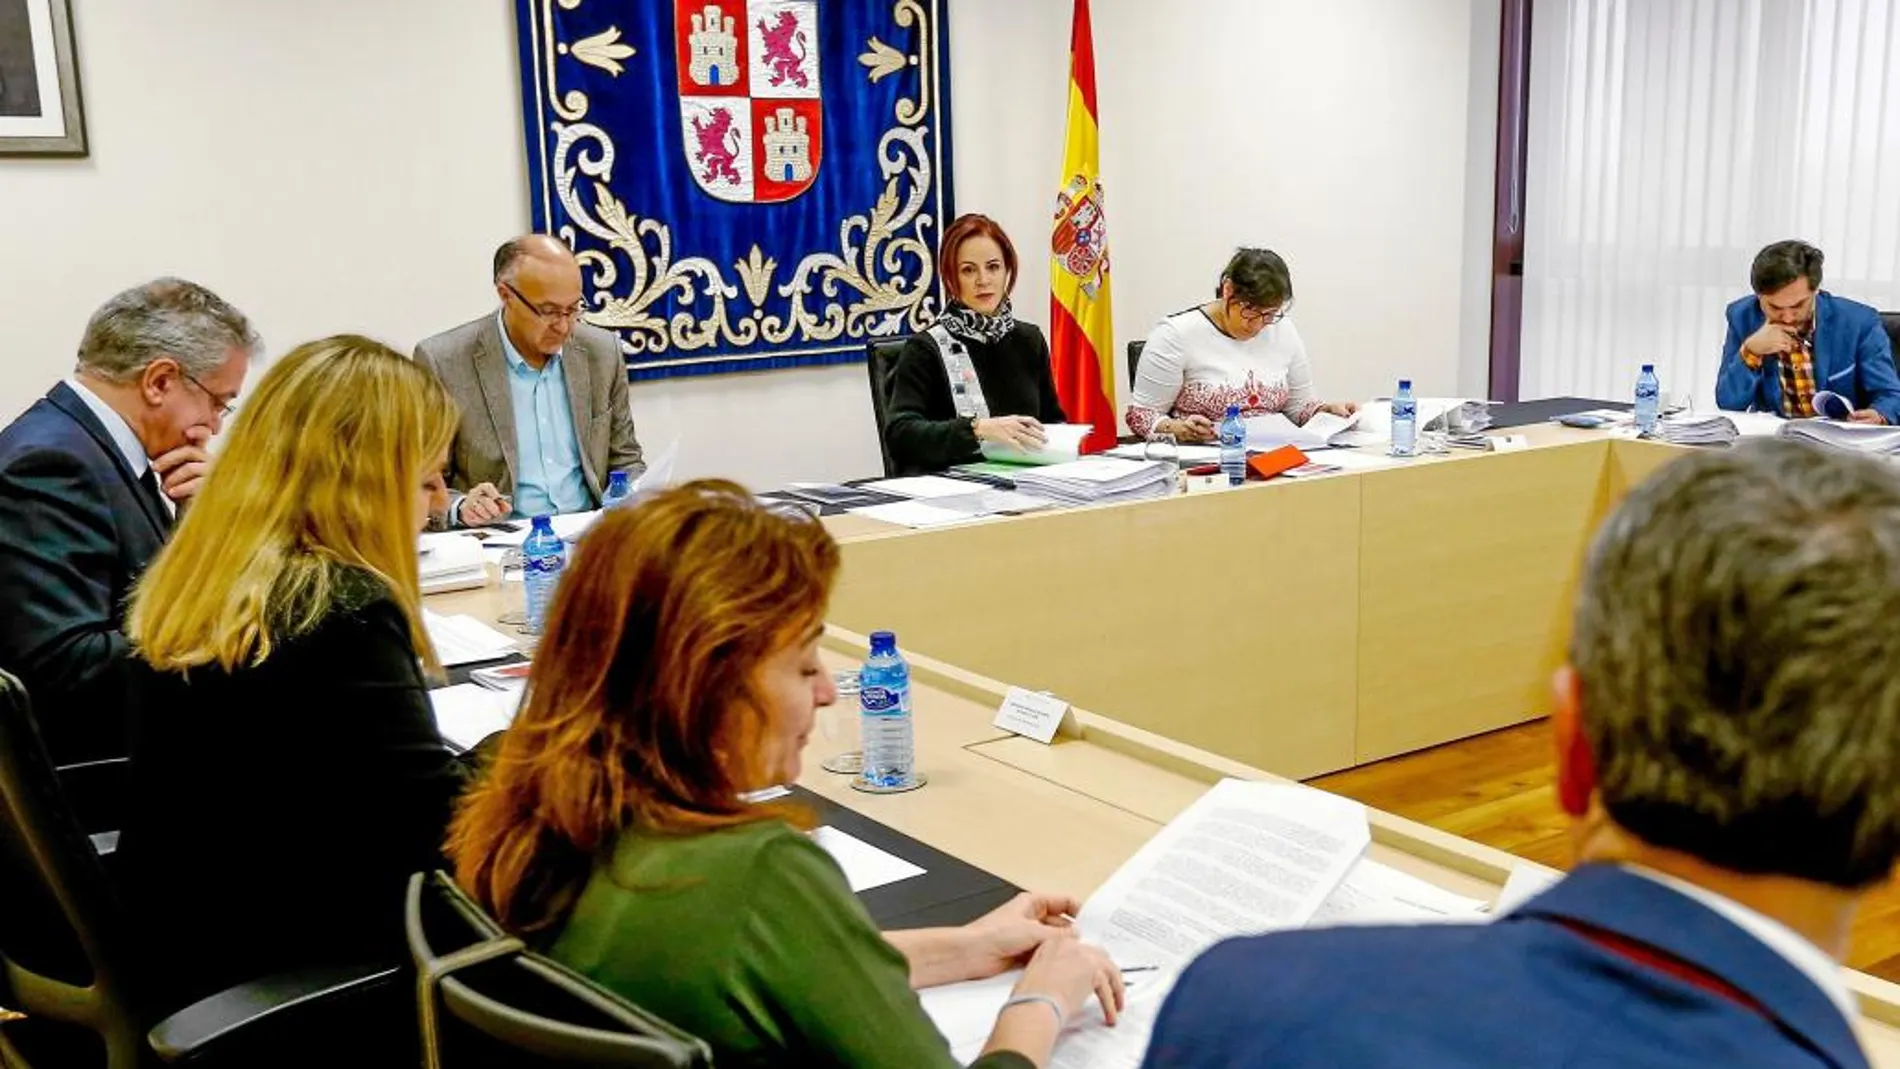 La presidenta del Legislativo autonómico, Silvia Clemente, preside la reunión de la Mesa de las Cortes, ayer en Valladolid.